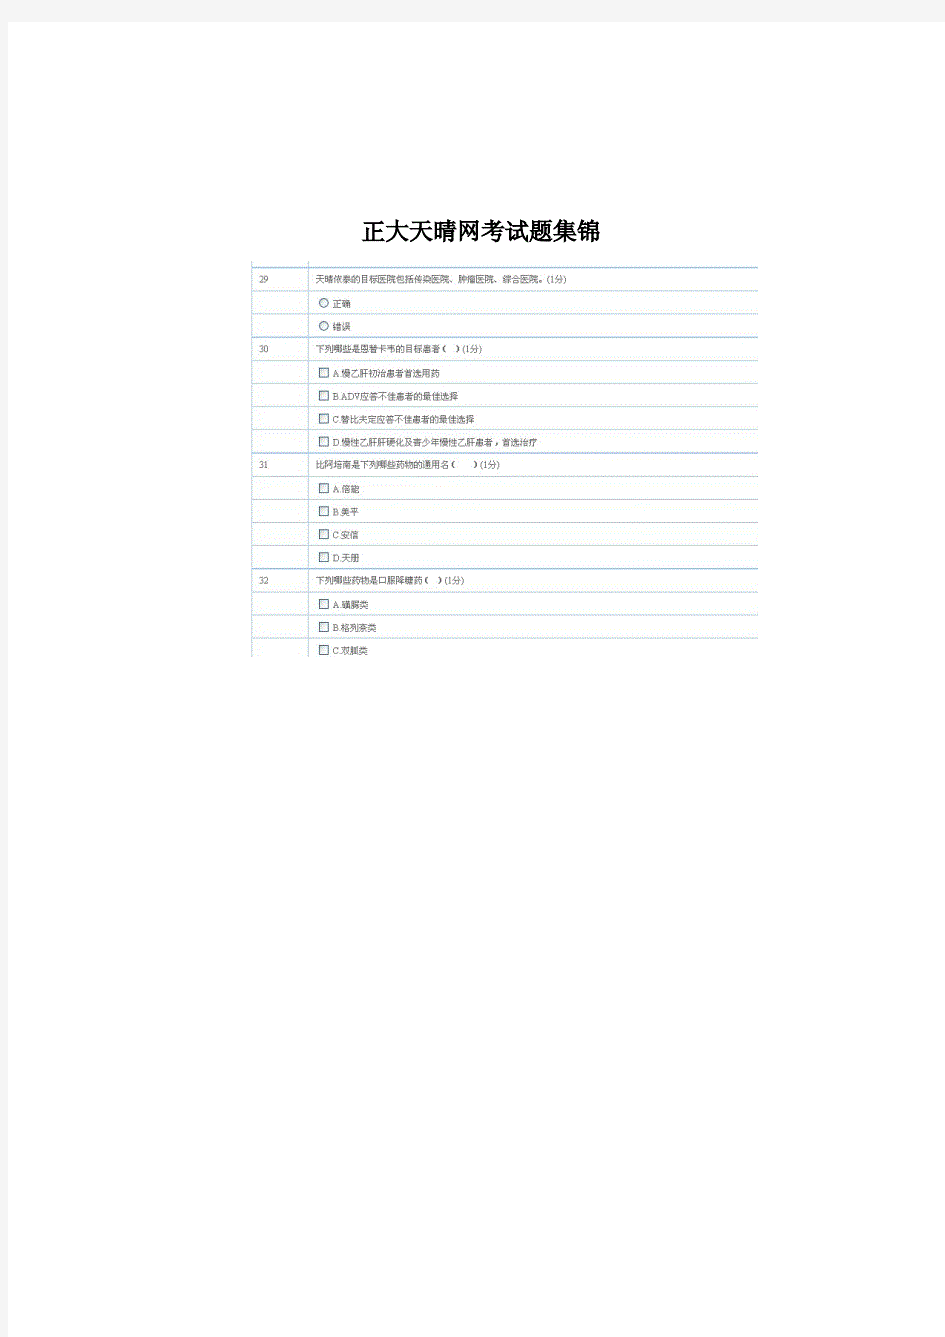  正大天晴网考练习题集锦完整版.pdf